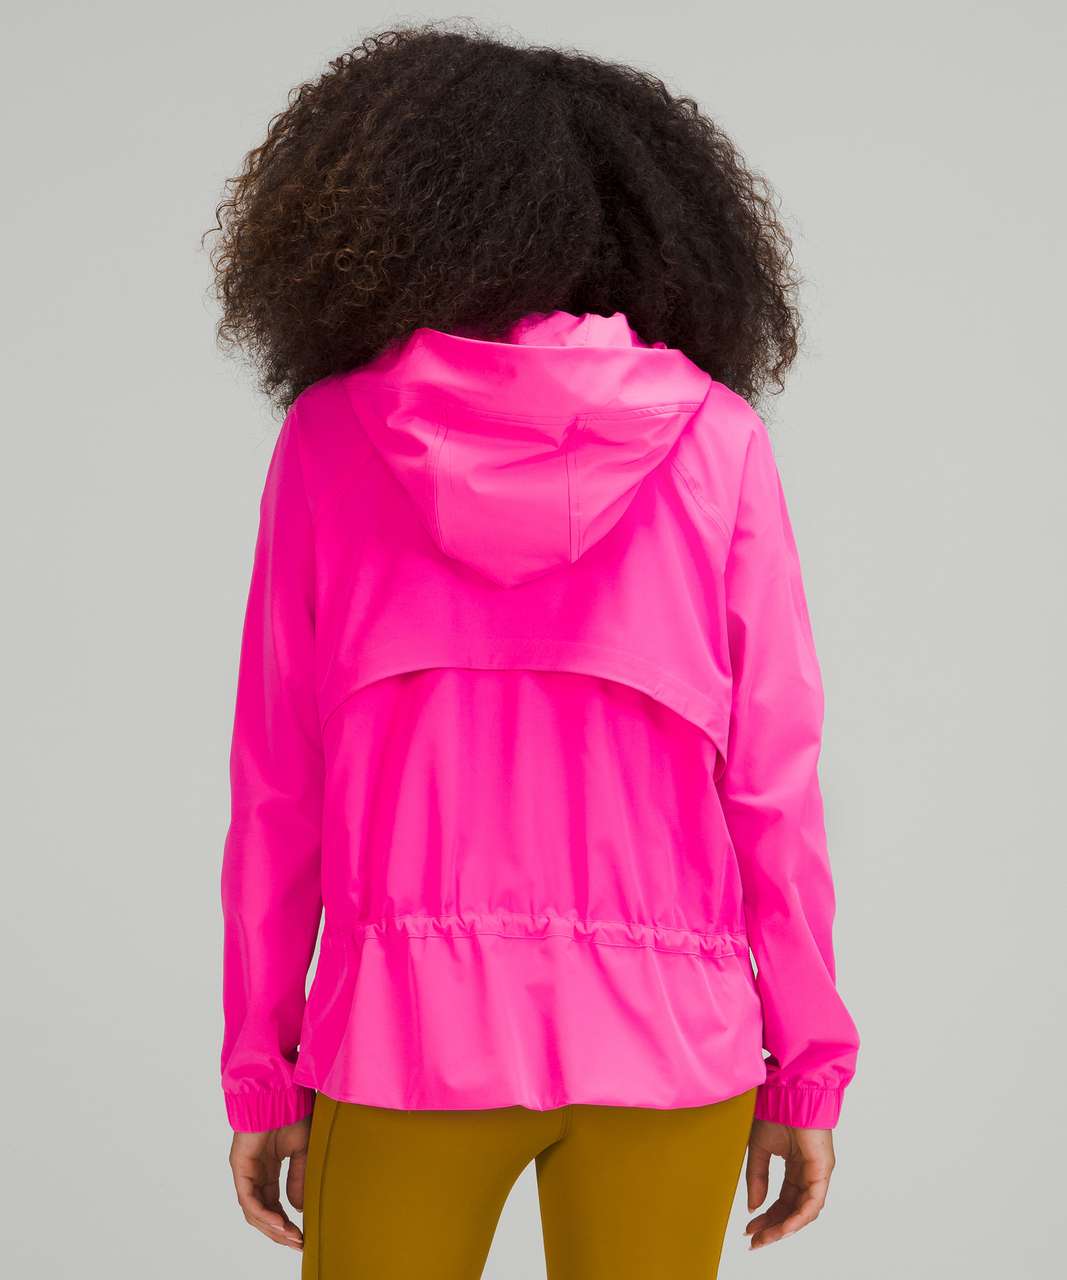 Lululemon Pack It Up Jacket - Pow Pink